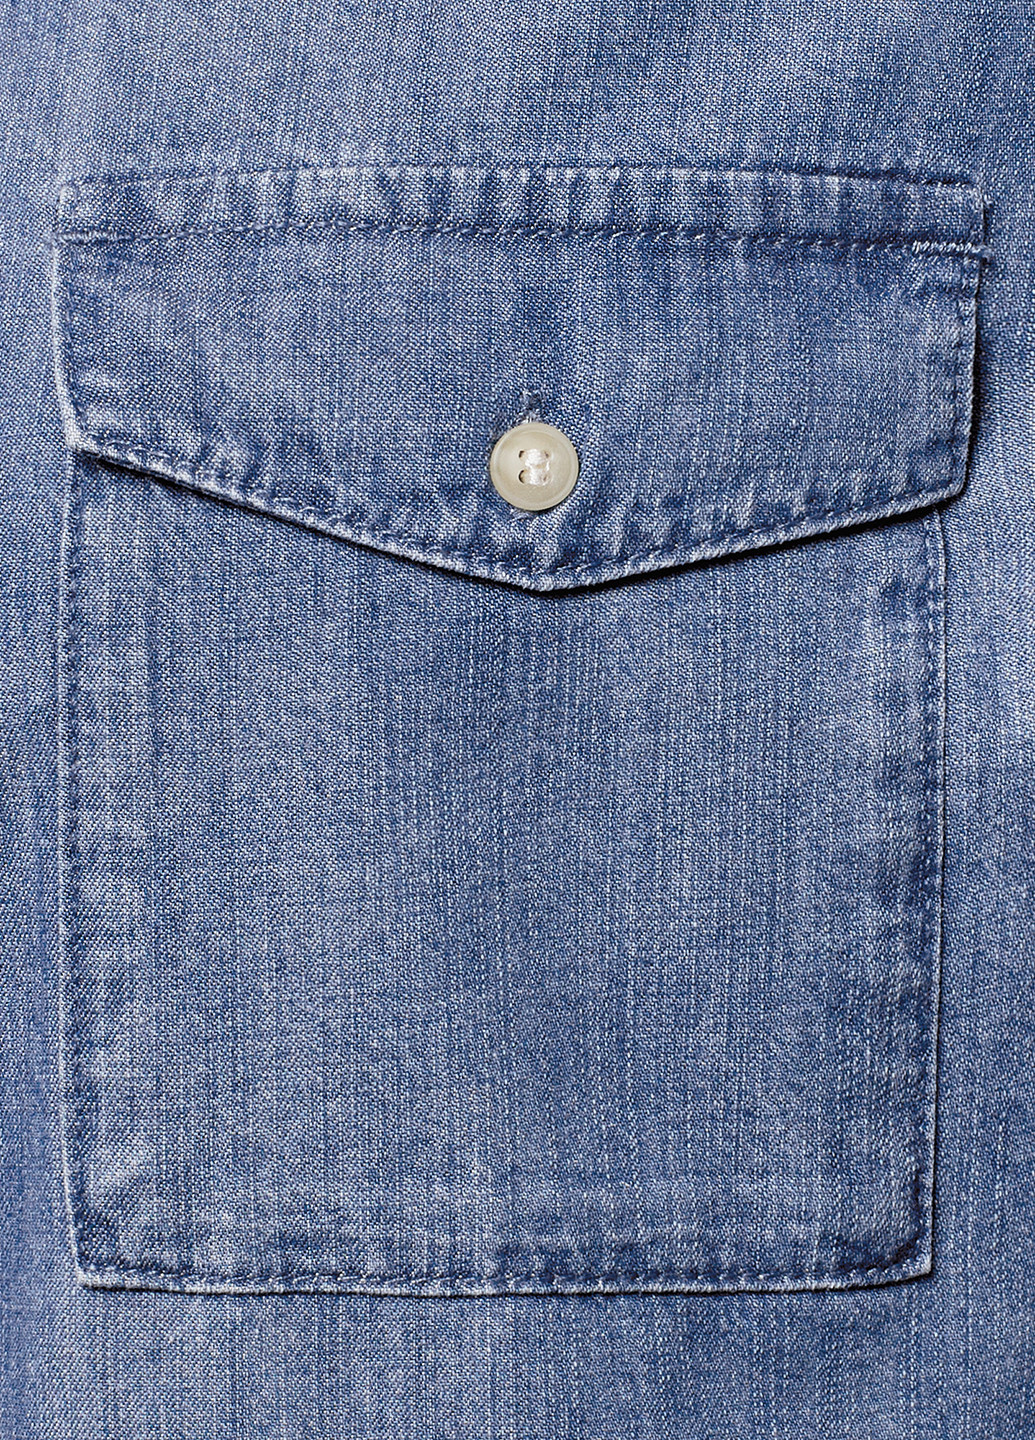 Синее джинсовое платье Oodji однотонное